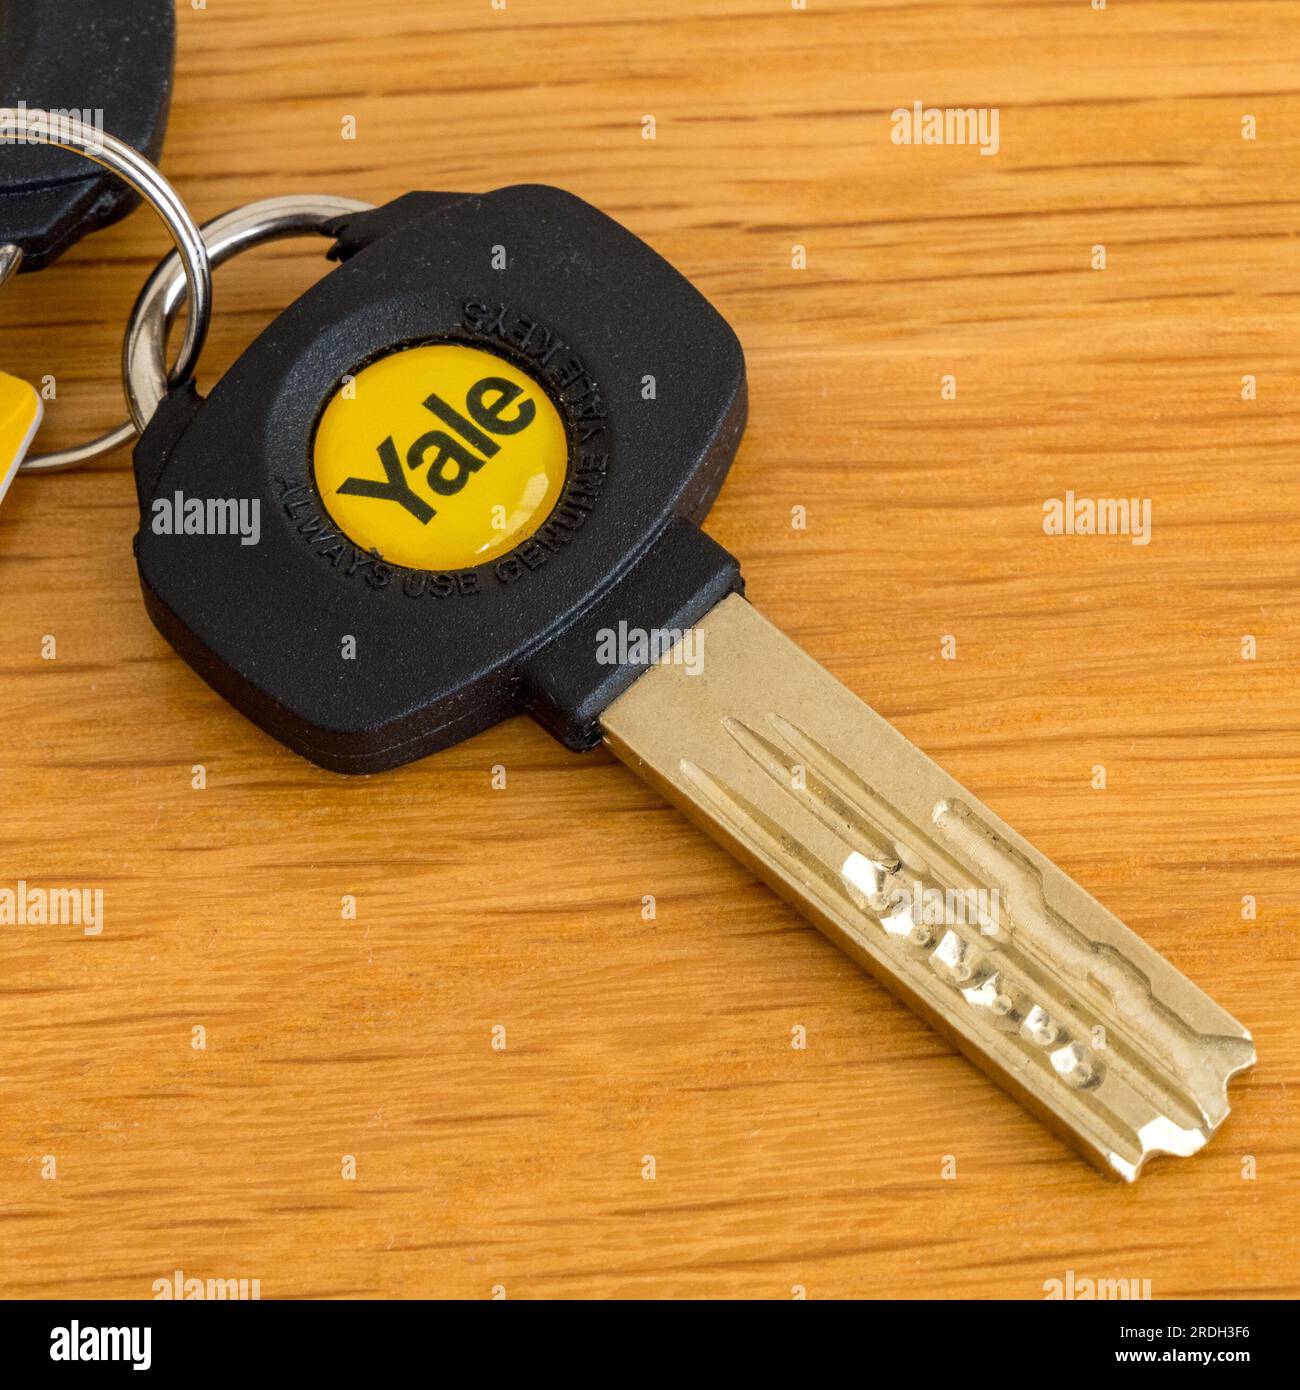 Ein hochsicherer Türschlossschlüssel mit Yale-Emblem auf Holztischfläche Stockfoto